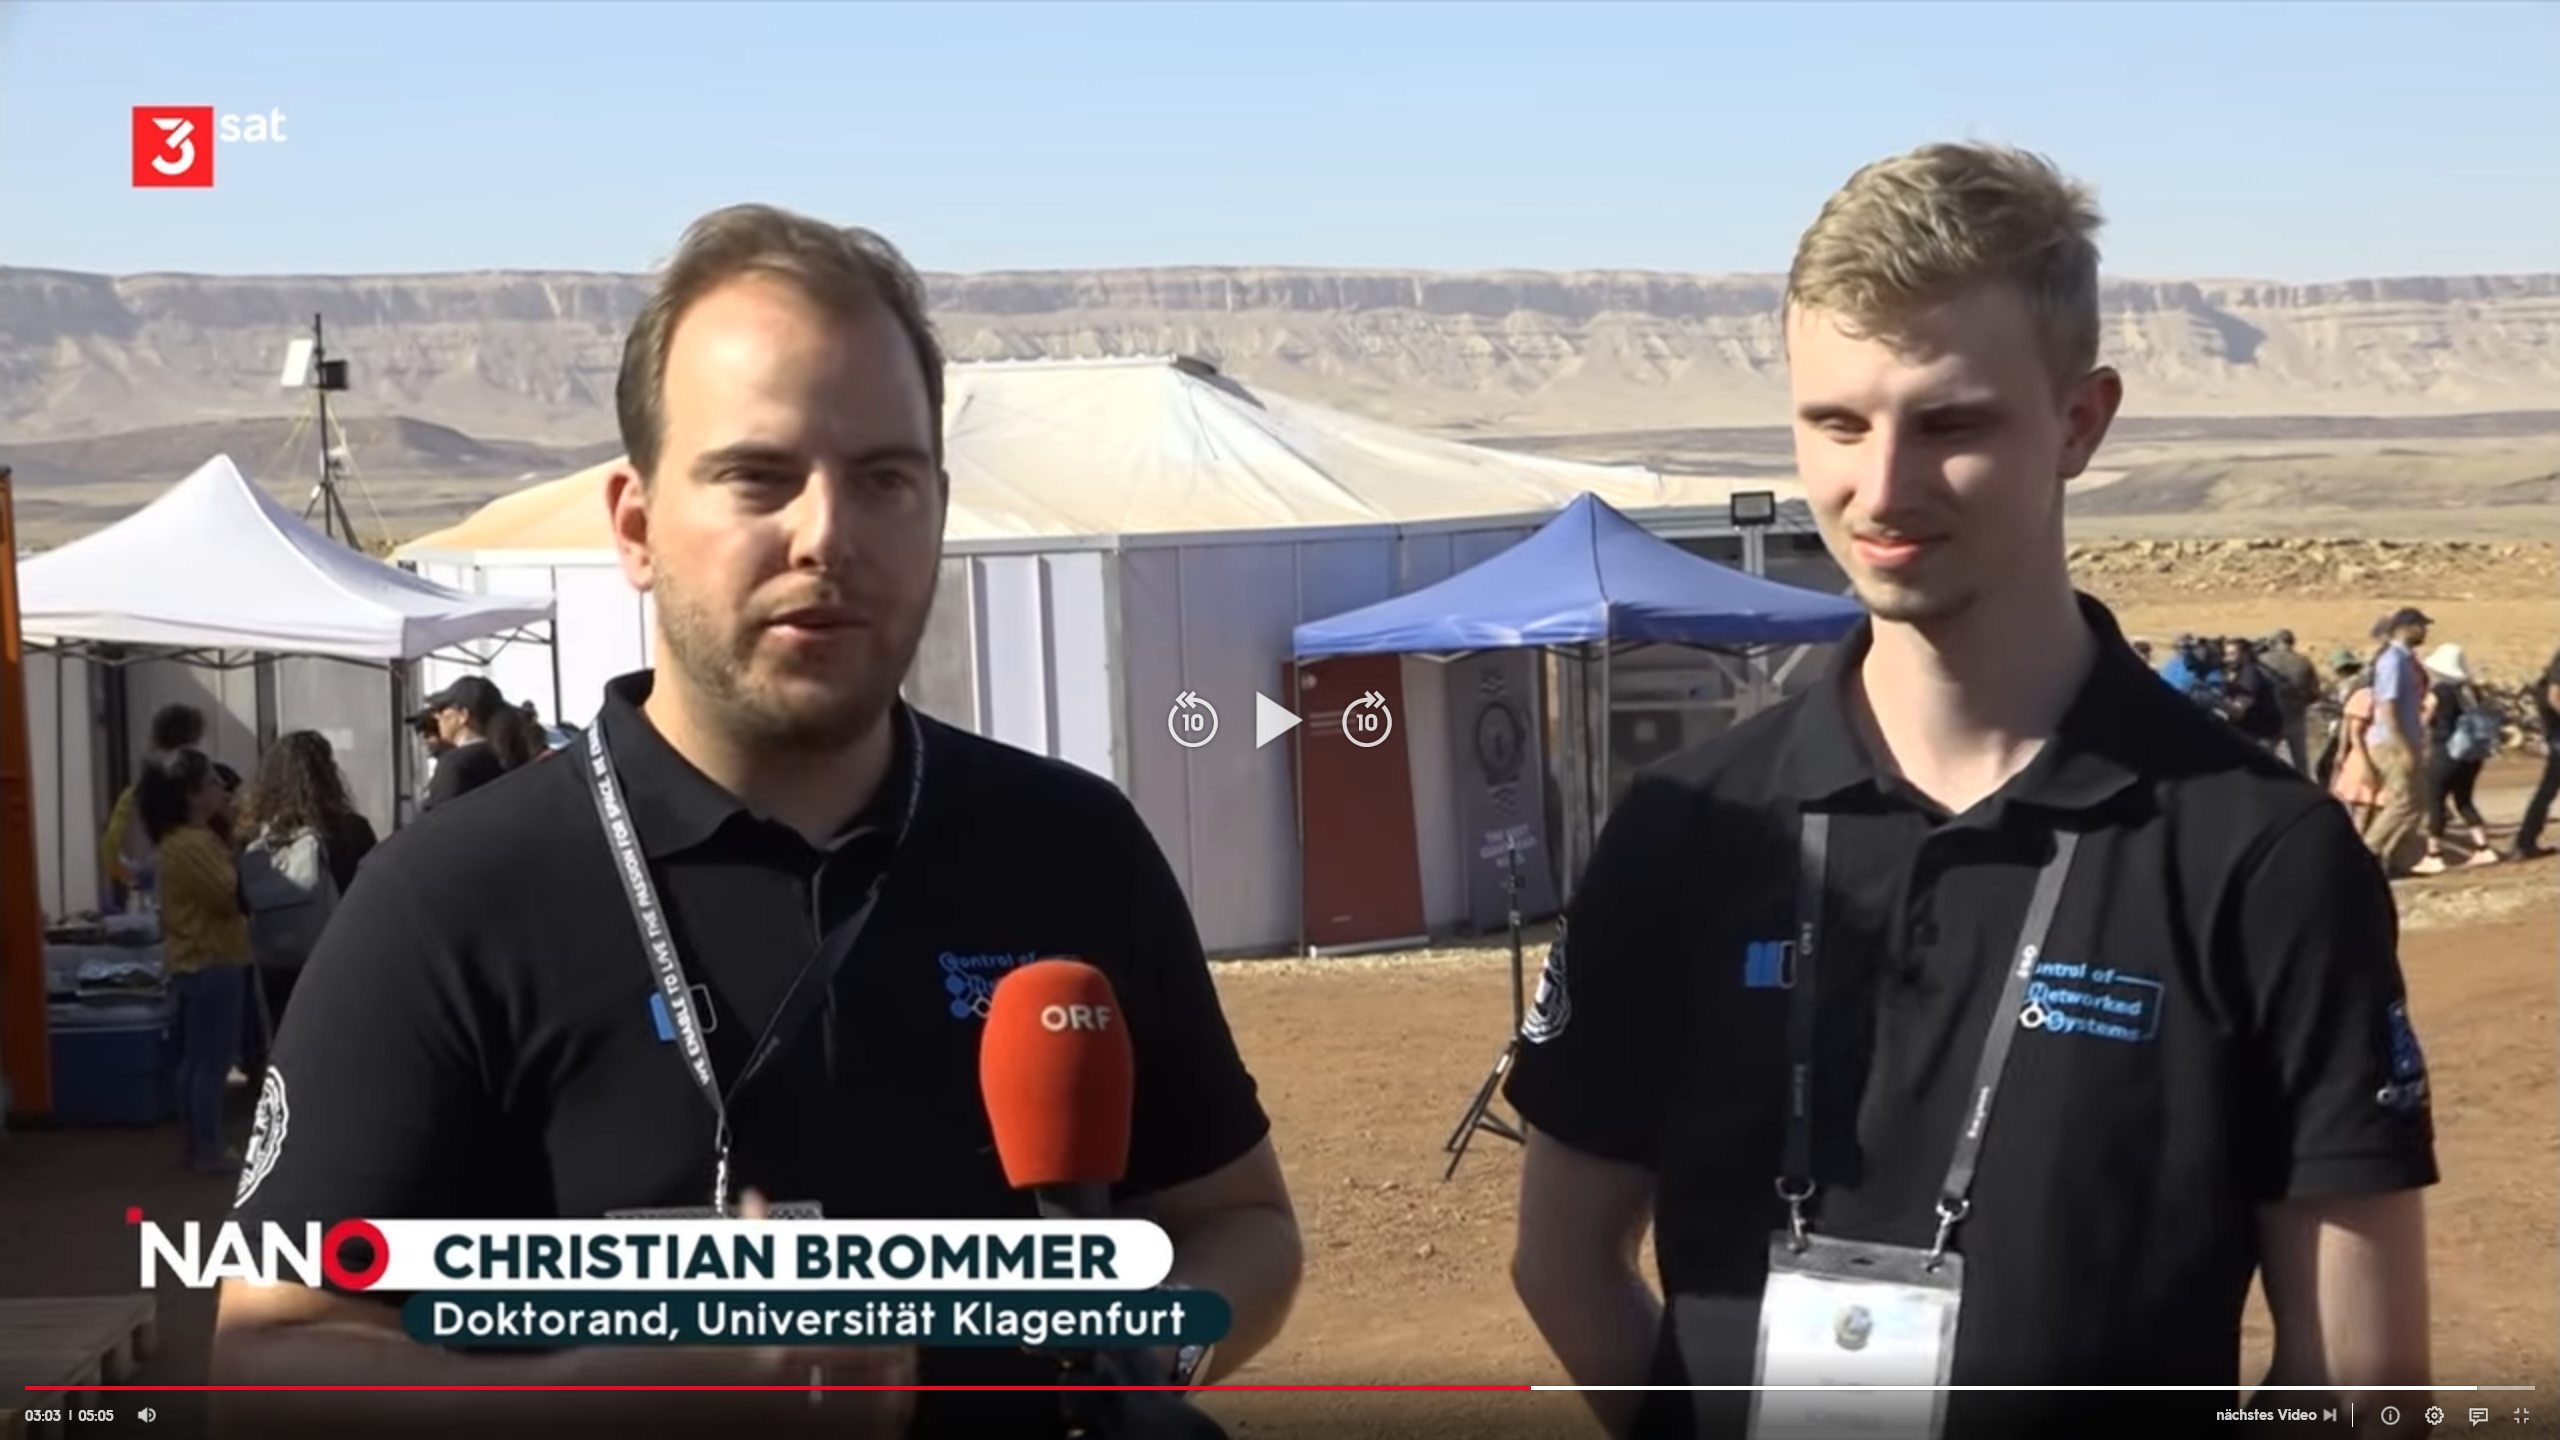 Christian Brommer, Martin Scheiber_3sat_nano | Screenshot